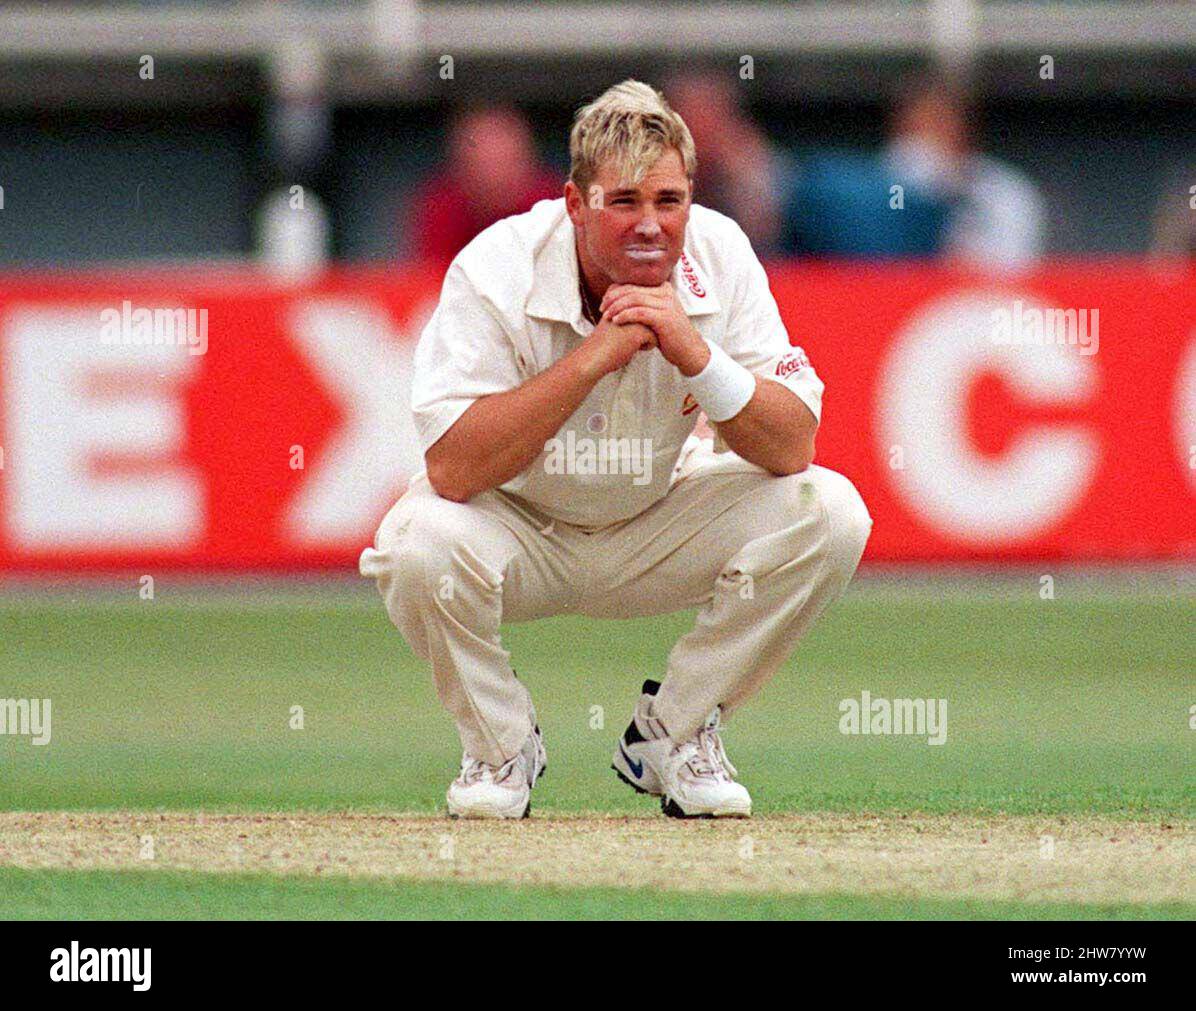 Aktenfoto vom 05-06-1997 von Australiens Shane Warne. Der ehemalige australische Cricketspieler Shane Warne ist im Alter von 52 Jahren gestorben, teilte seine Managementfirma MPC Entertainment in einer Erklärung mit. Ausgabedatum: Freitag, 4. März 2022. Stockfoto